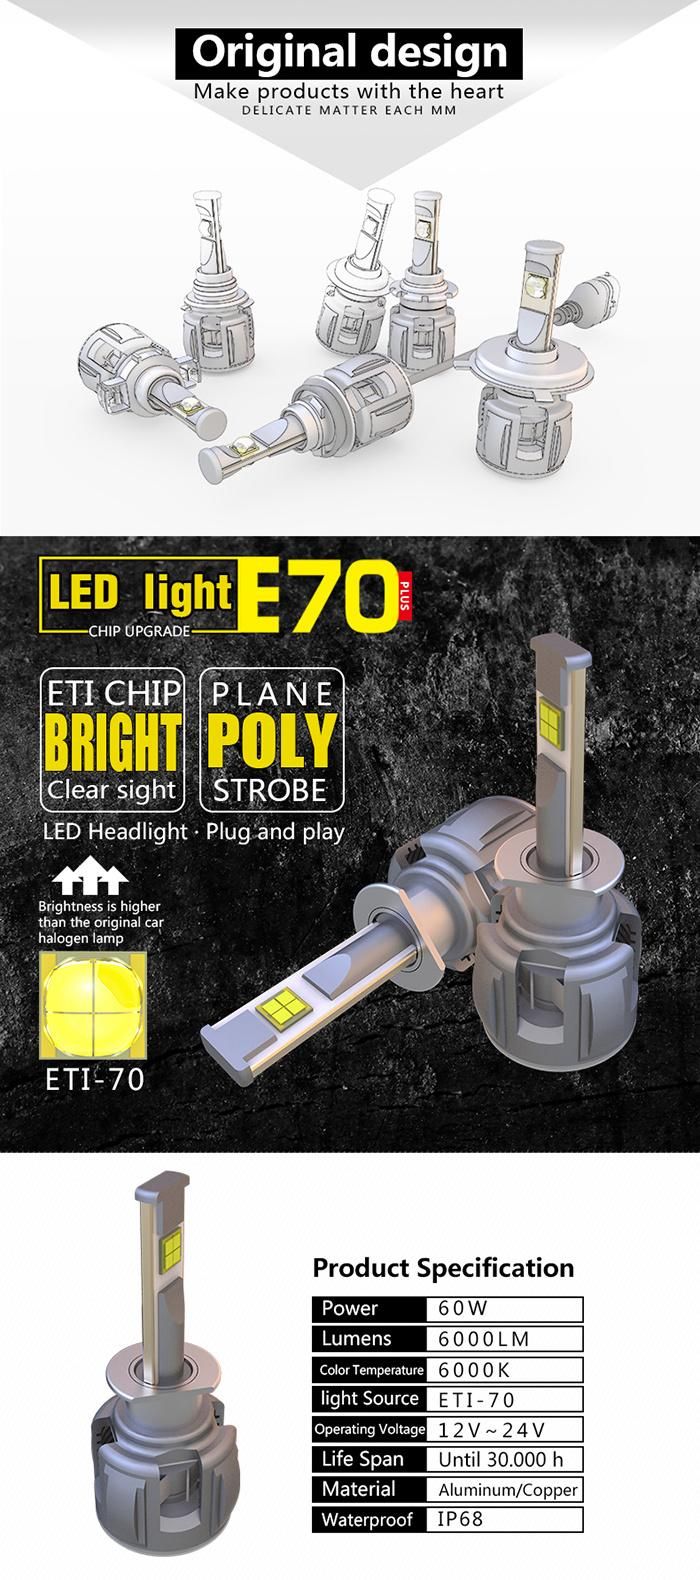 E70 LED Headlight Bulbs for Jeep Car H1 Fog Light